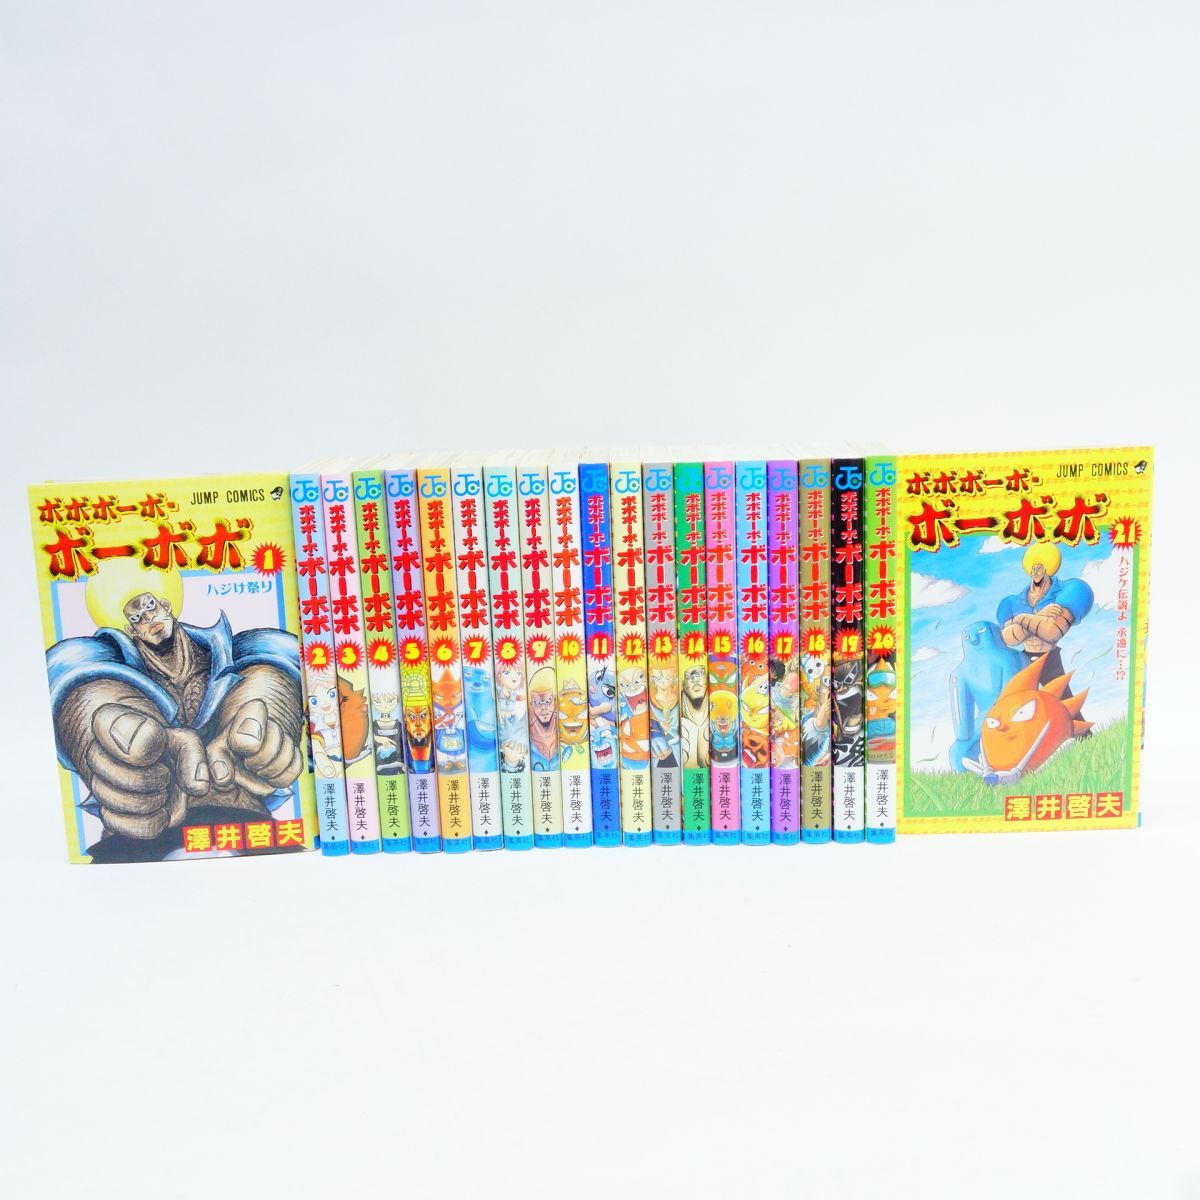 ボボボーボ・ボーボボ 1〜21巻 全巻セット/コミック/澤井啓夫 ※中古 